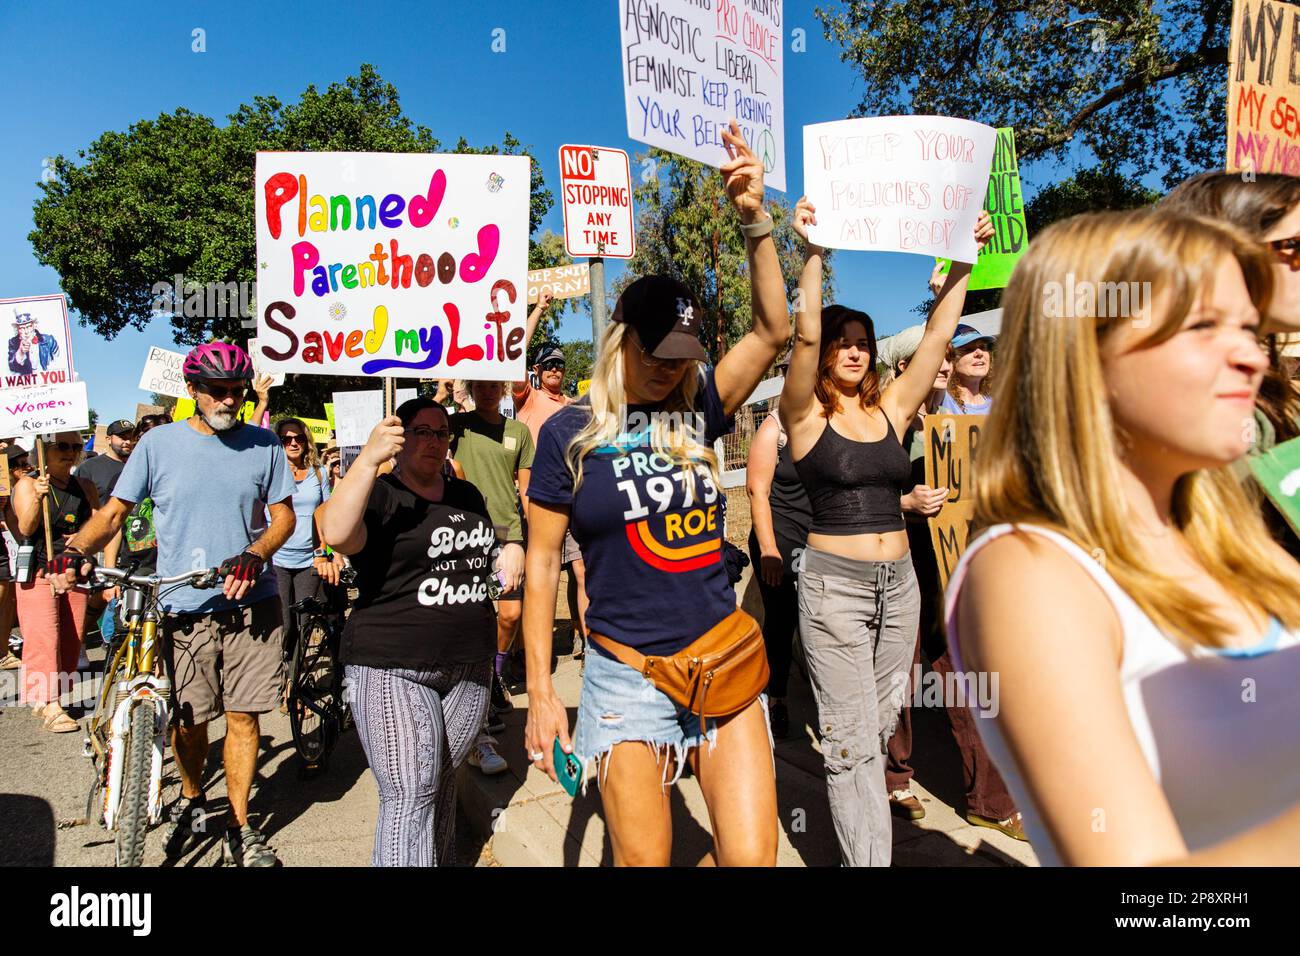 Die örtliche Gemeinschaft stellt sich als Frauenmarsch heraus, der gegen den Sturz von Roe gegen Wade in einer kleinen Stadt protestiert. Ojai, Kalifornien. Stockfoto